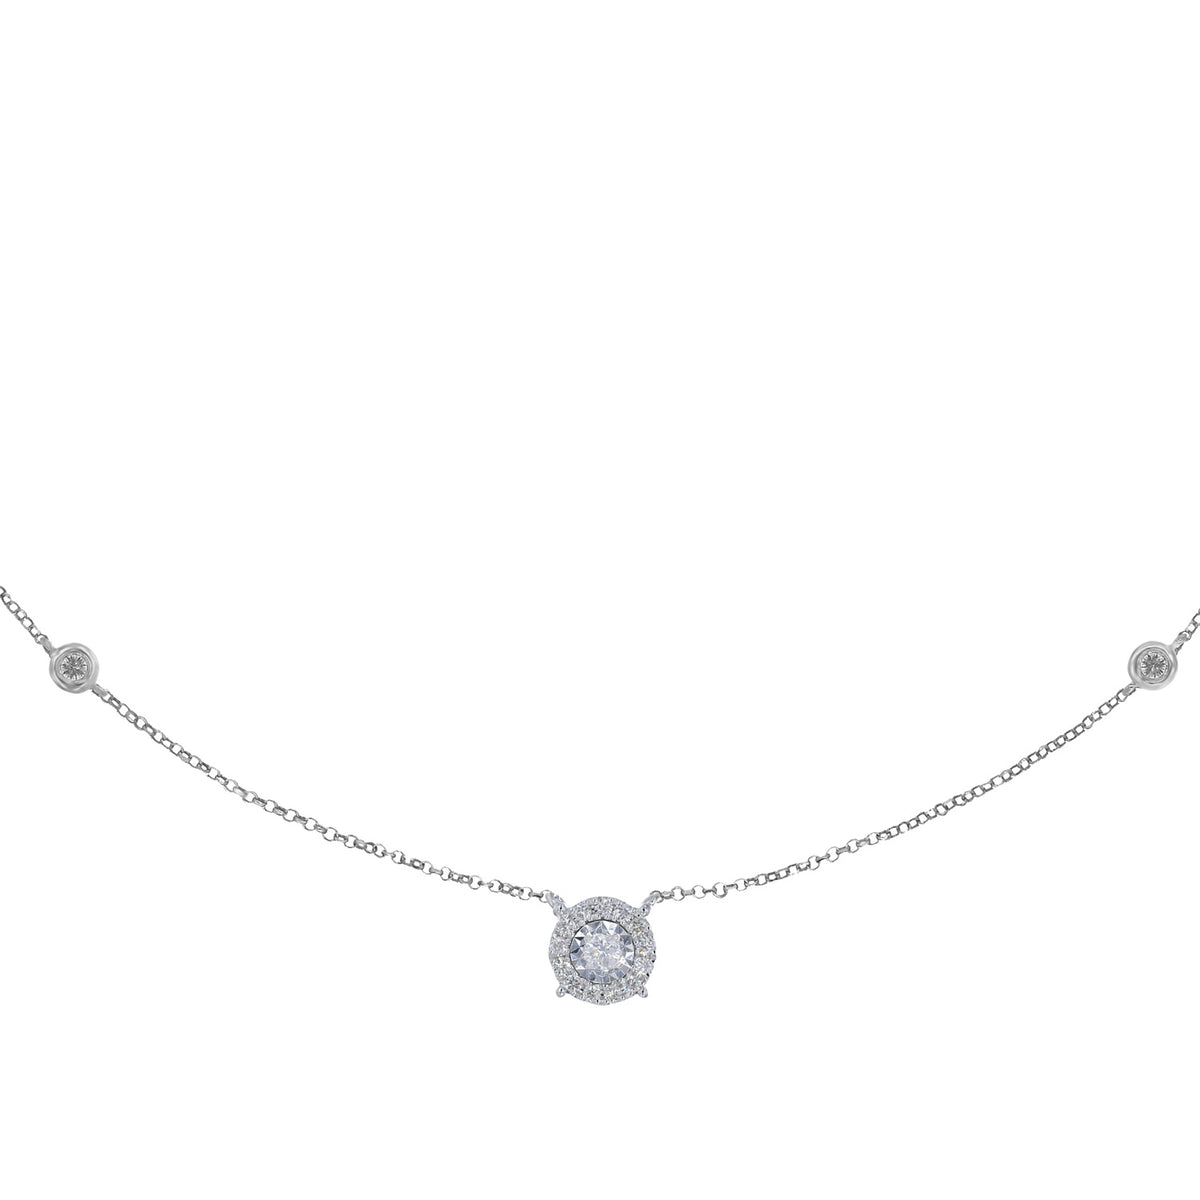 Round diamond necklace. Diamond Necklace.